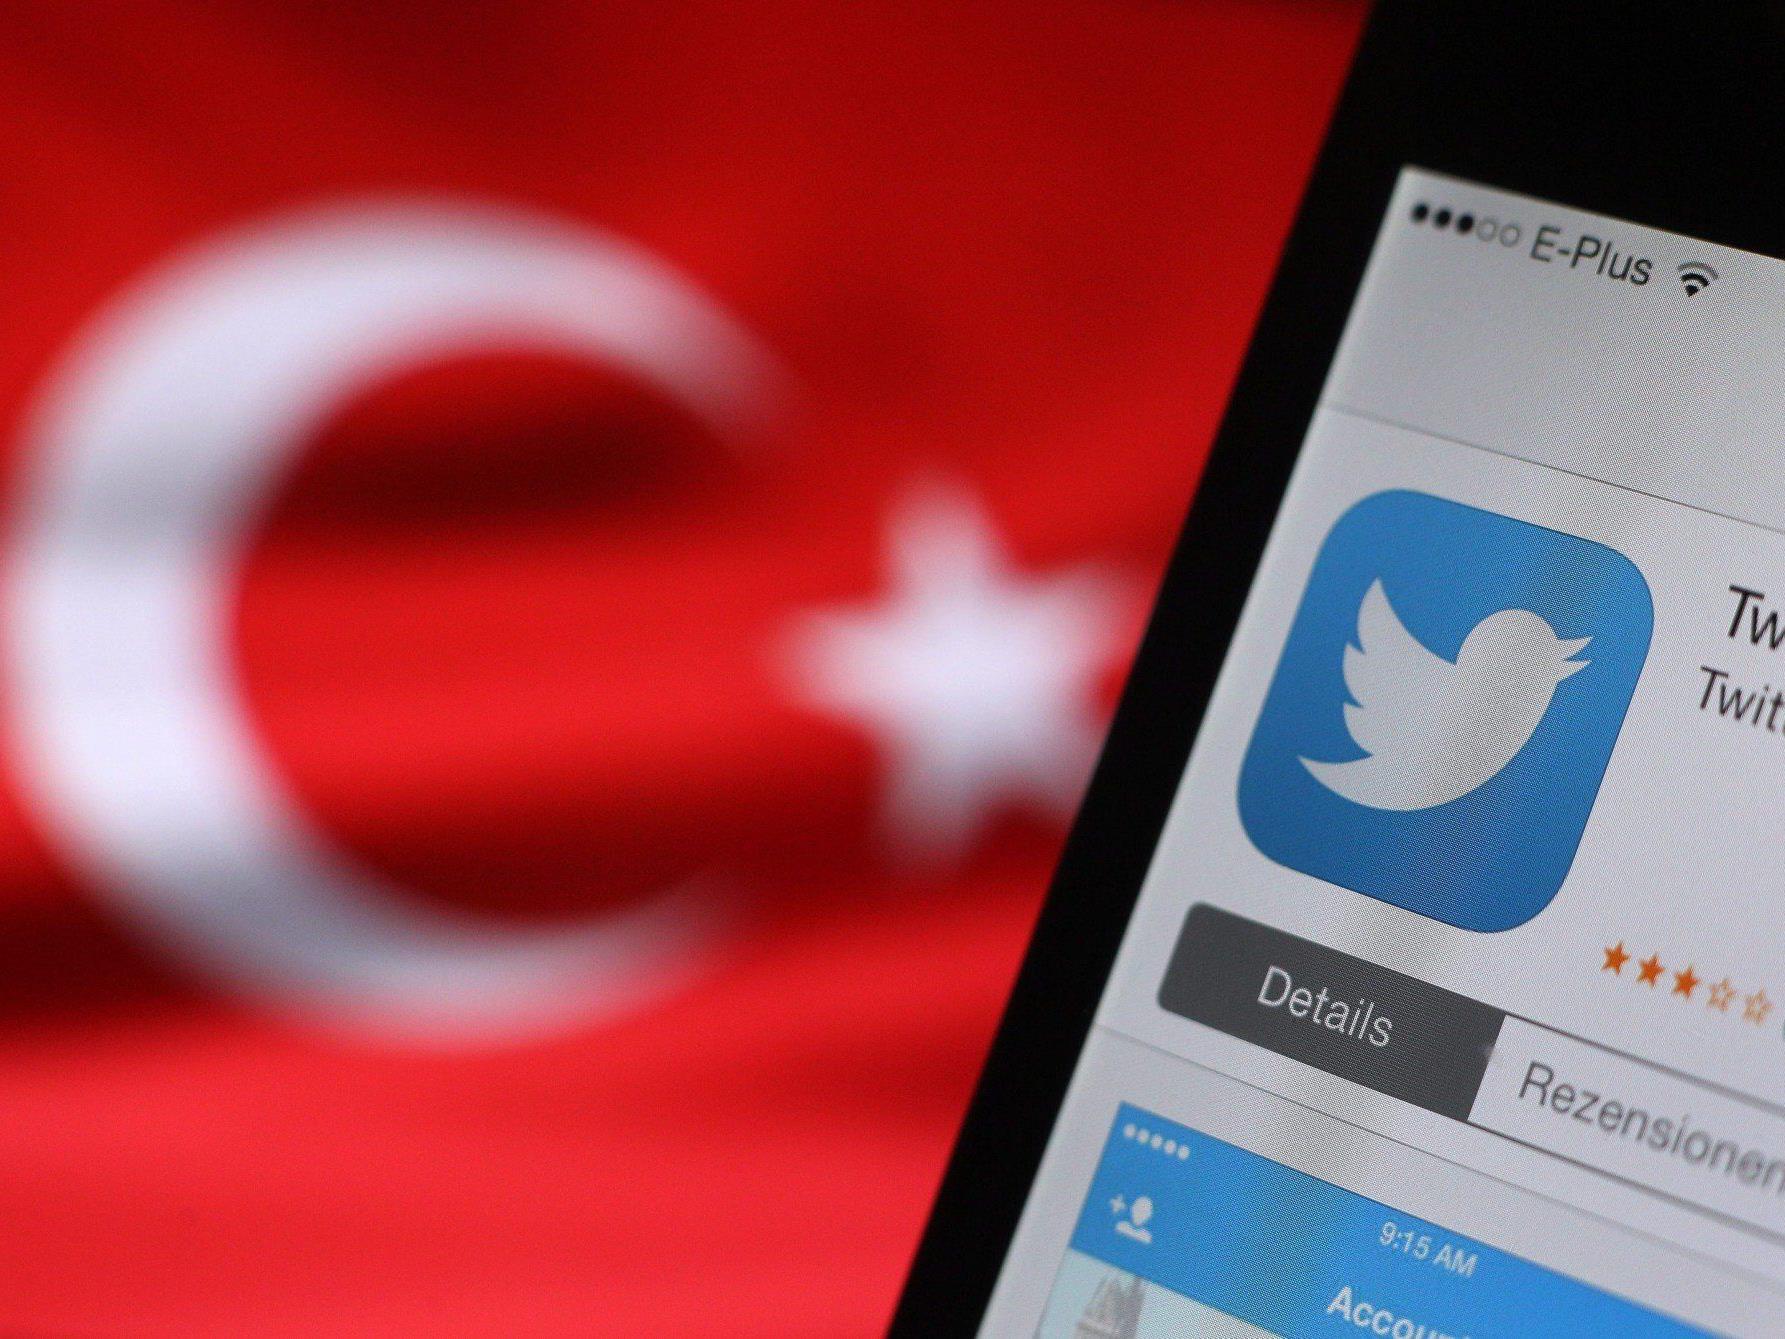 Sperre wird umgangen: Halbe Million Tweets in der Türkei trotz Verbot.